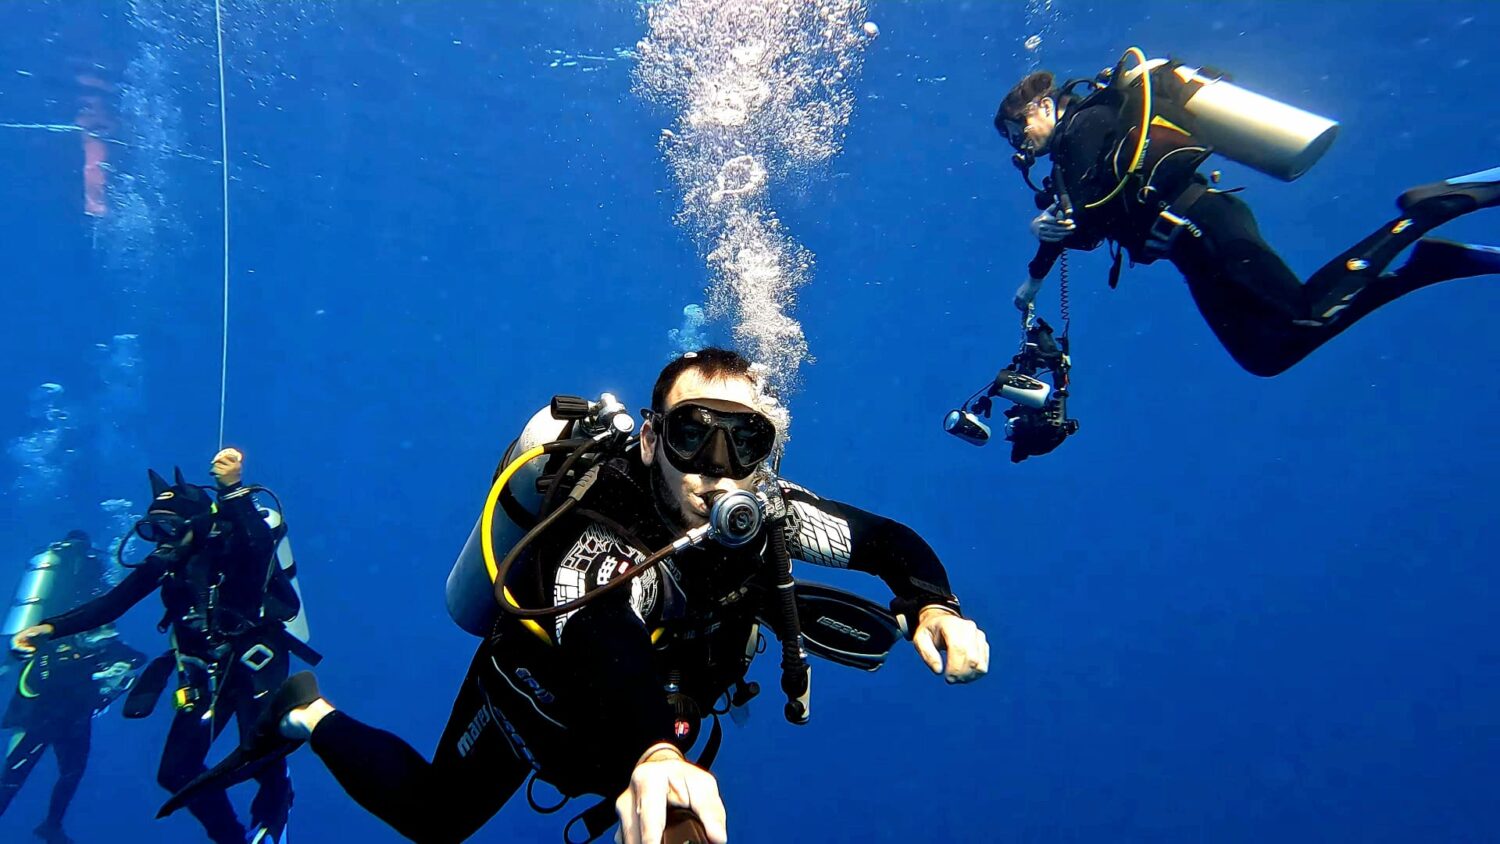 plongeurs expérimentés francophone vacances plongée indonésie photographe sous marin palier de sécurité